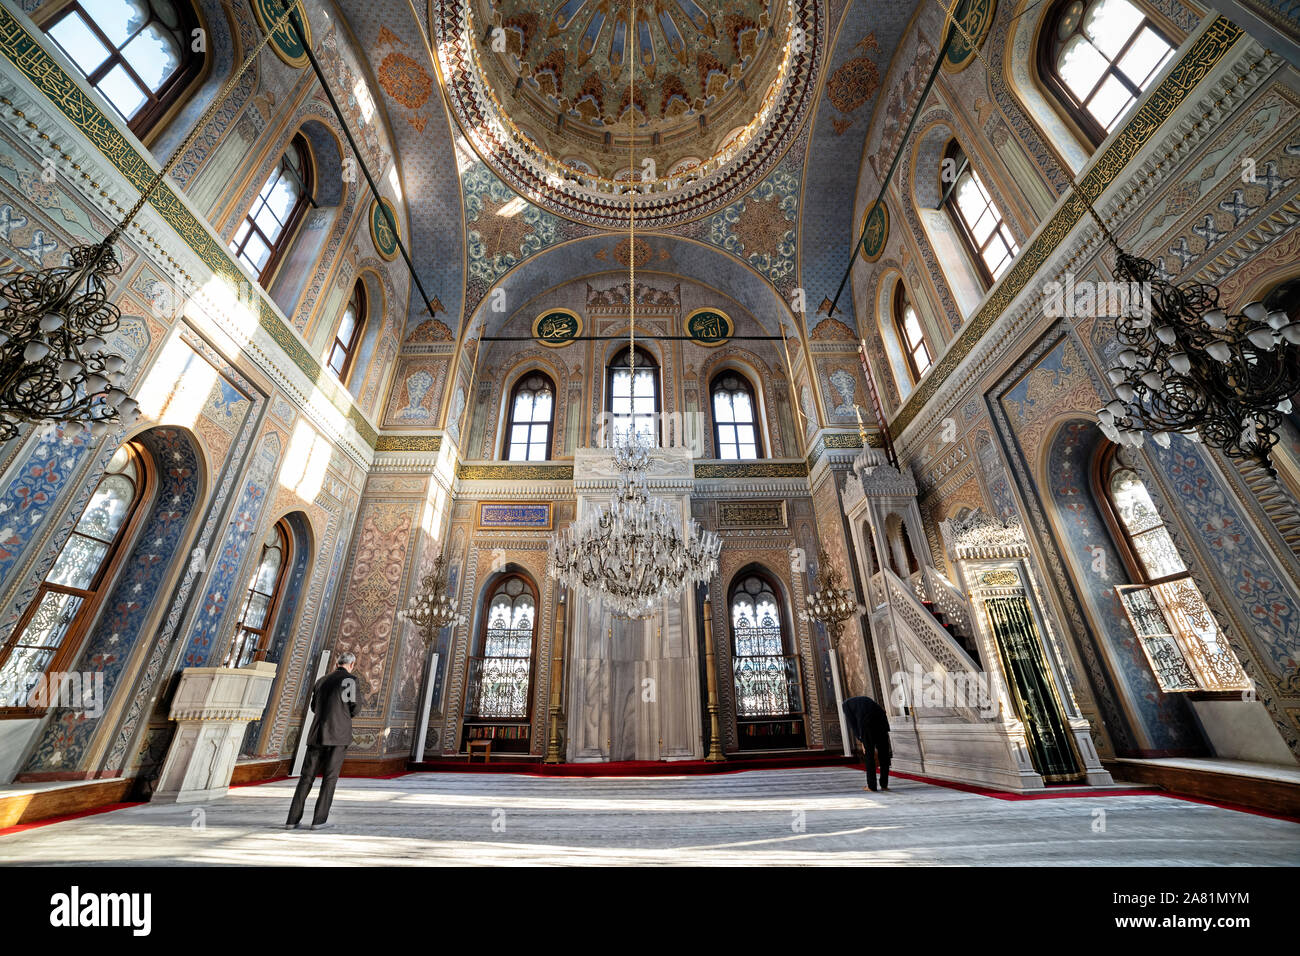 ISTANBUL, Turchia, 5 novembre 2019: dettaglio interni da Pertevniyal valido? La Moschea del Sultano, un XIX secolo ottomano moschea imperiale si trova in Aksaray. Foto Stock